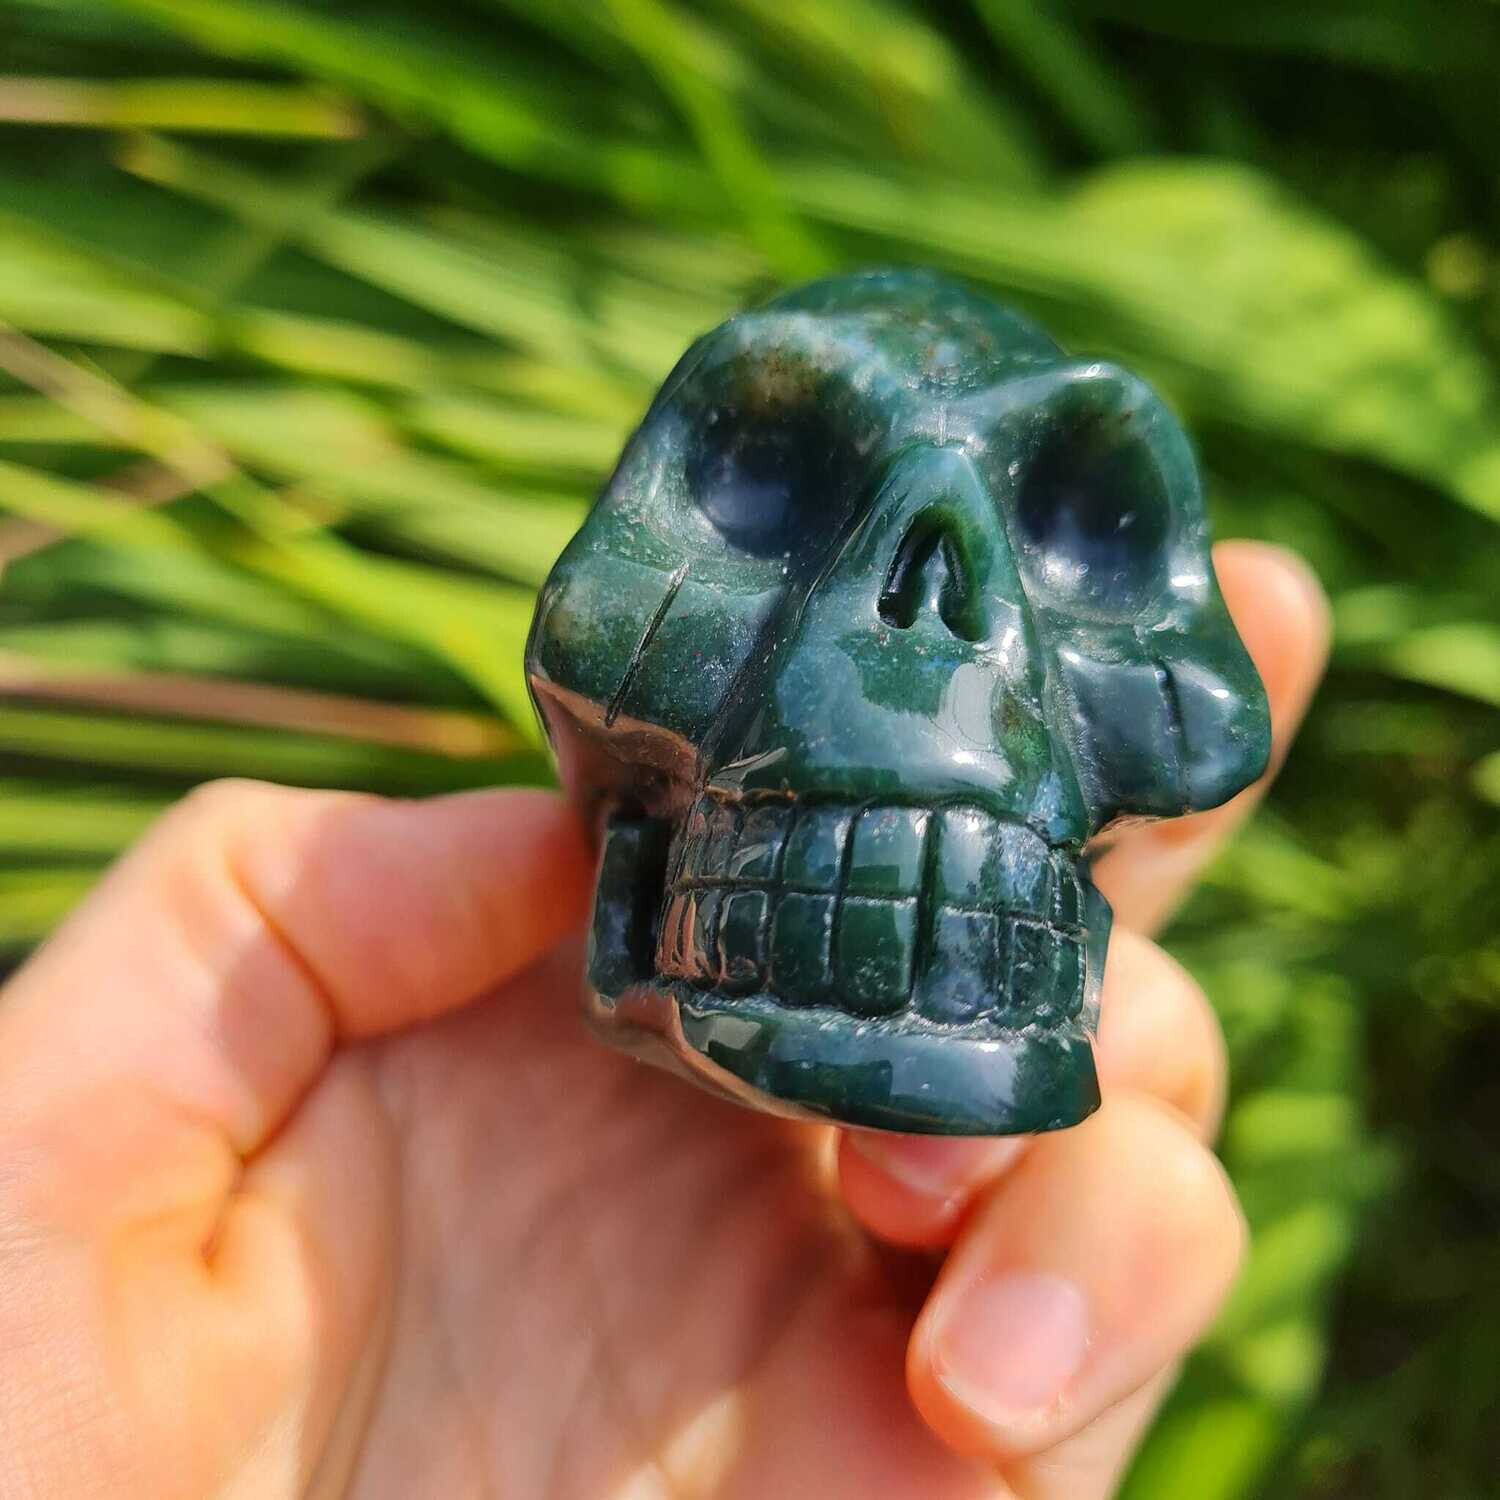 Earth Magic Jasper Crystal Skull 2.5